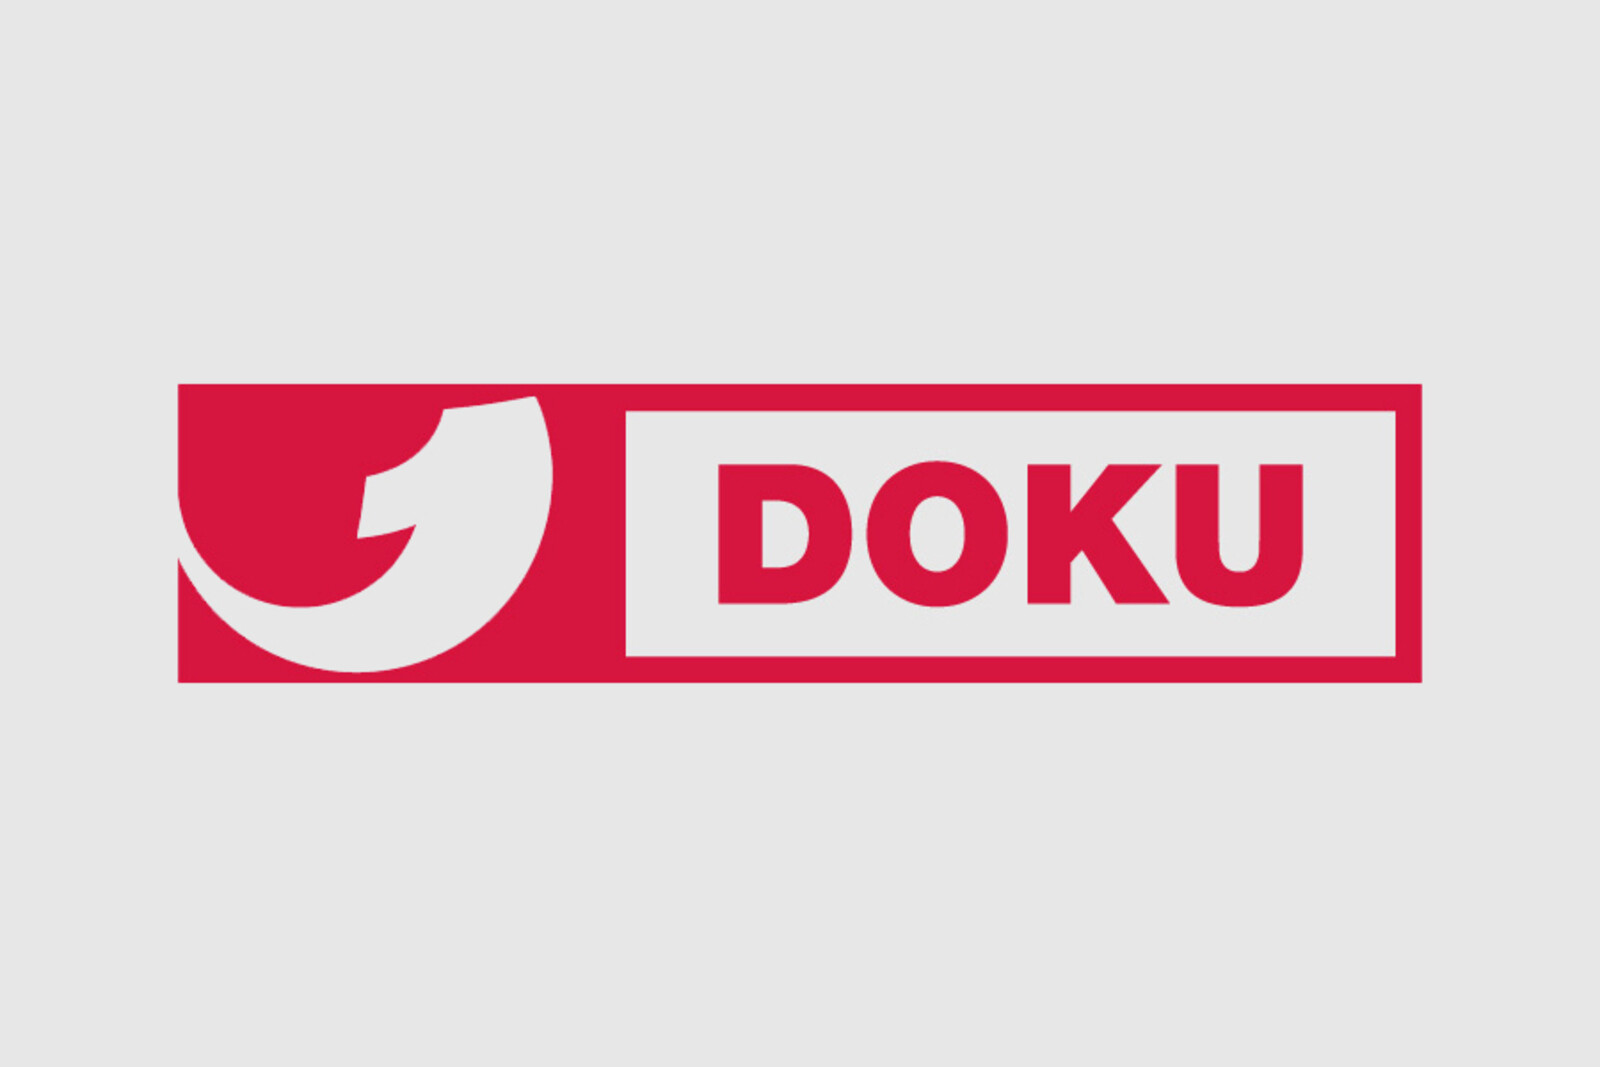 Logo des TV-Senders Kabel1 Doku